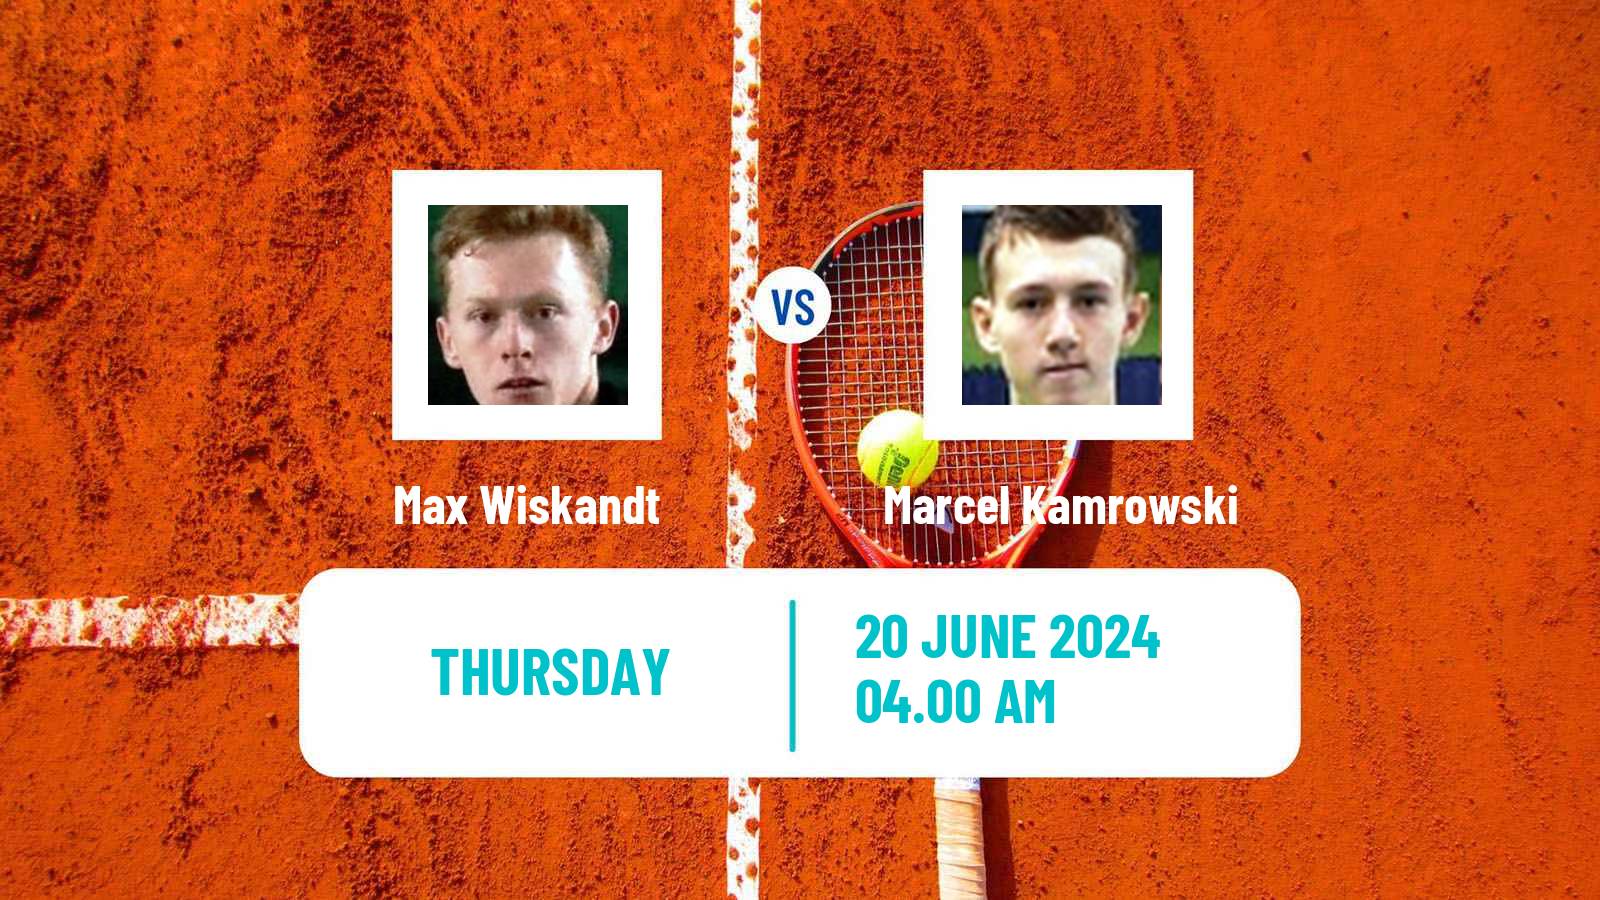 Tennis ITF M15 Koszalin 2 Men Max Wiskandt - Marcel Kamrowski